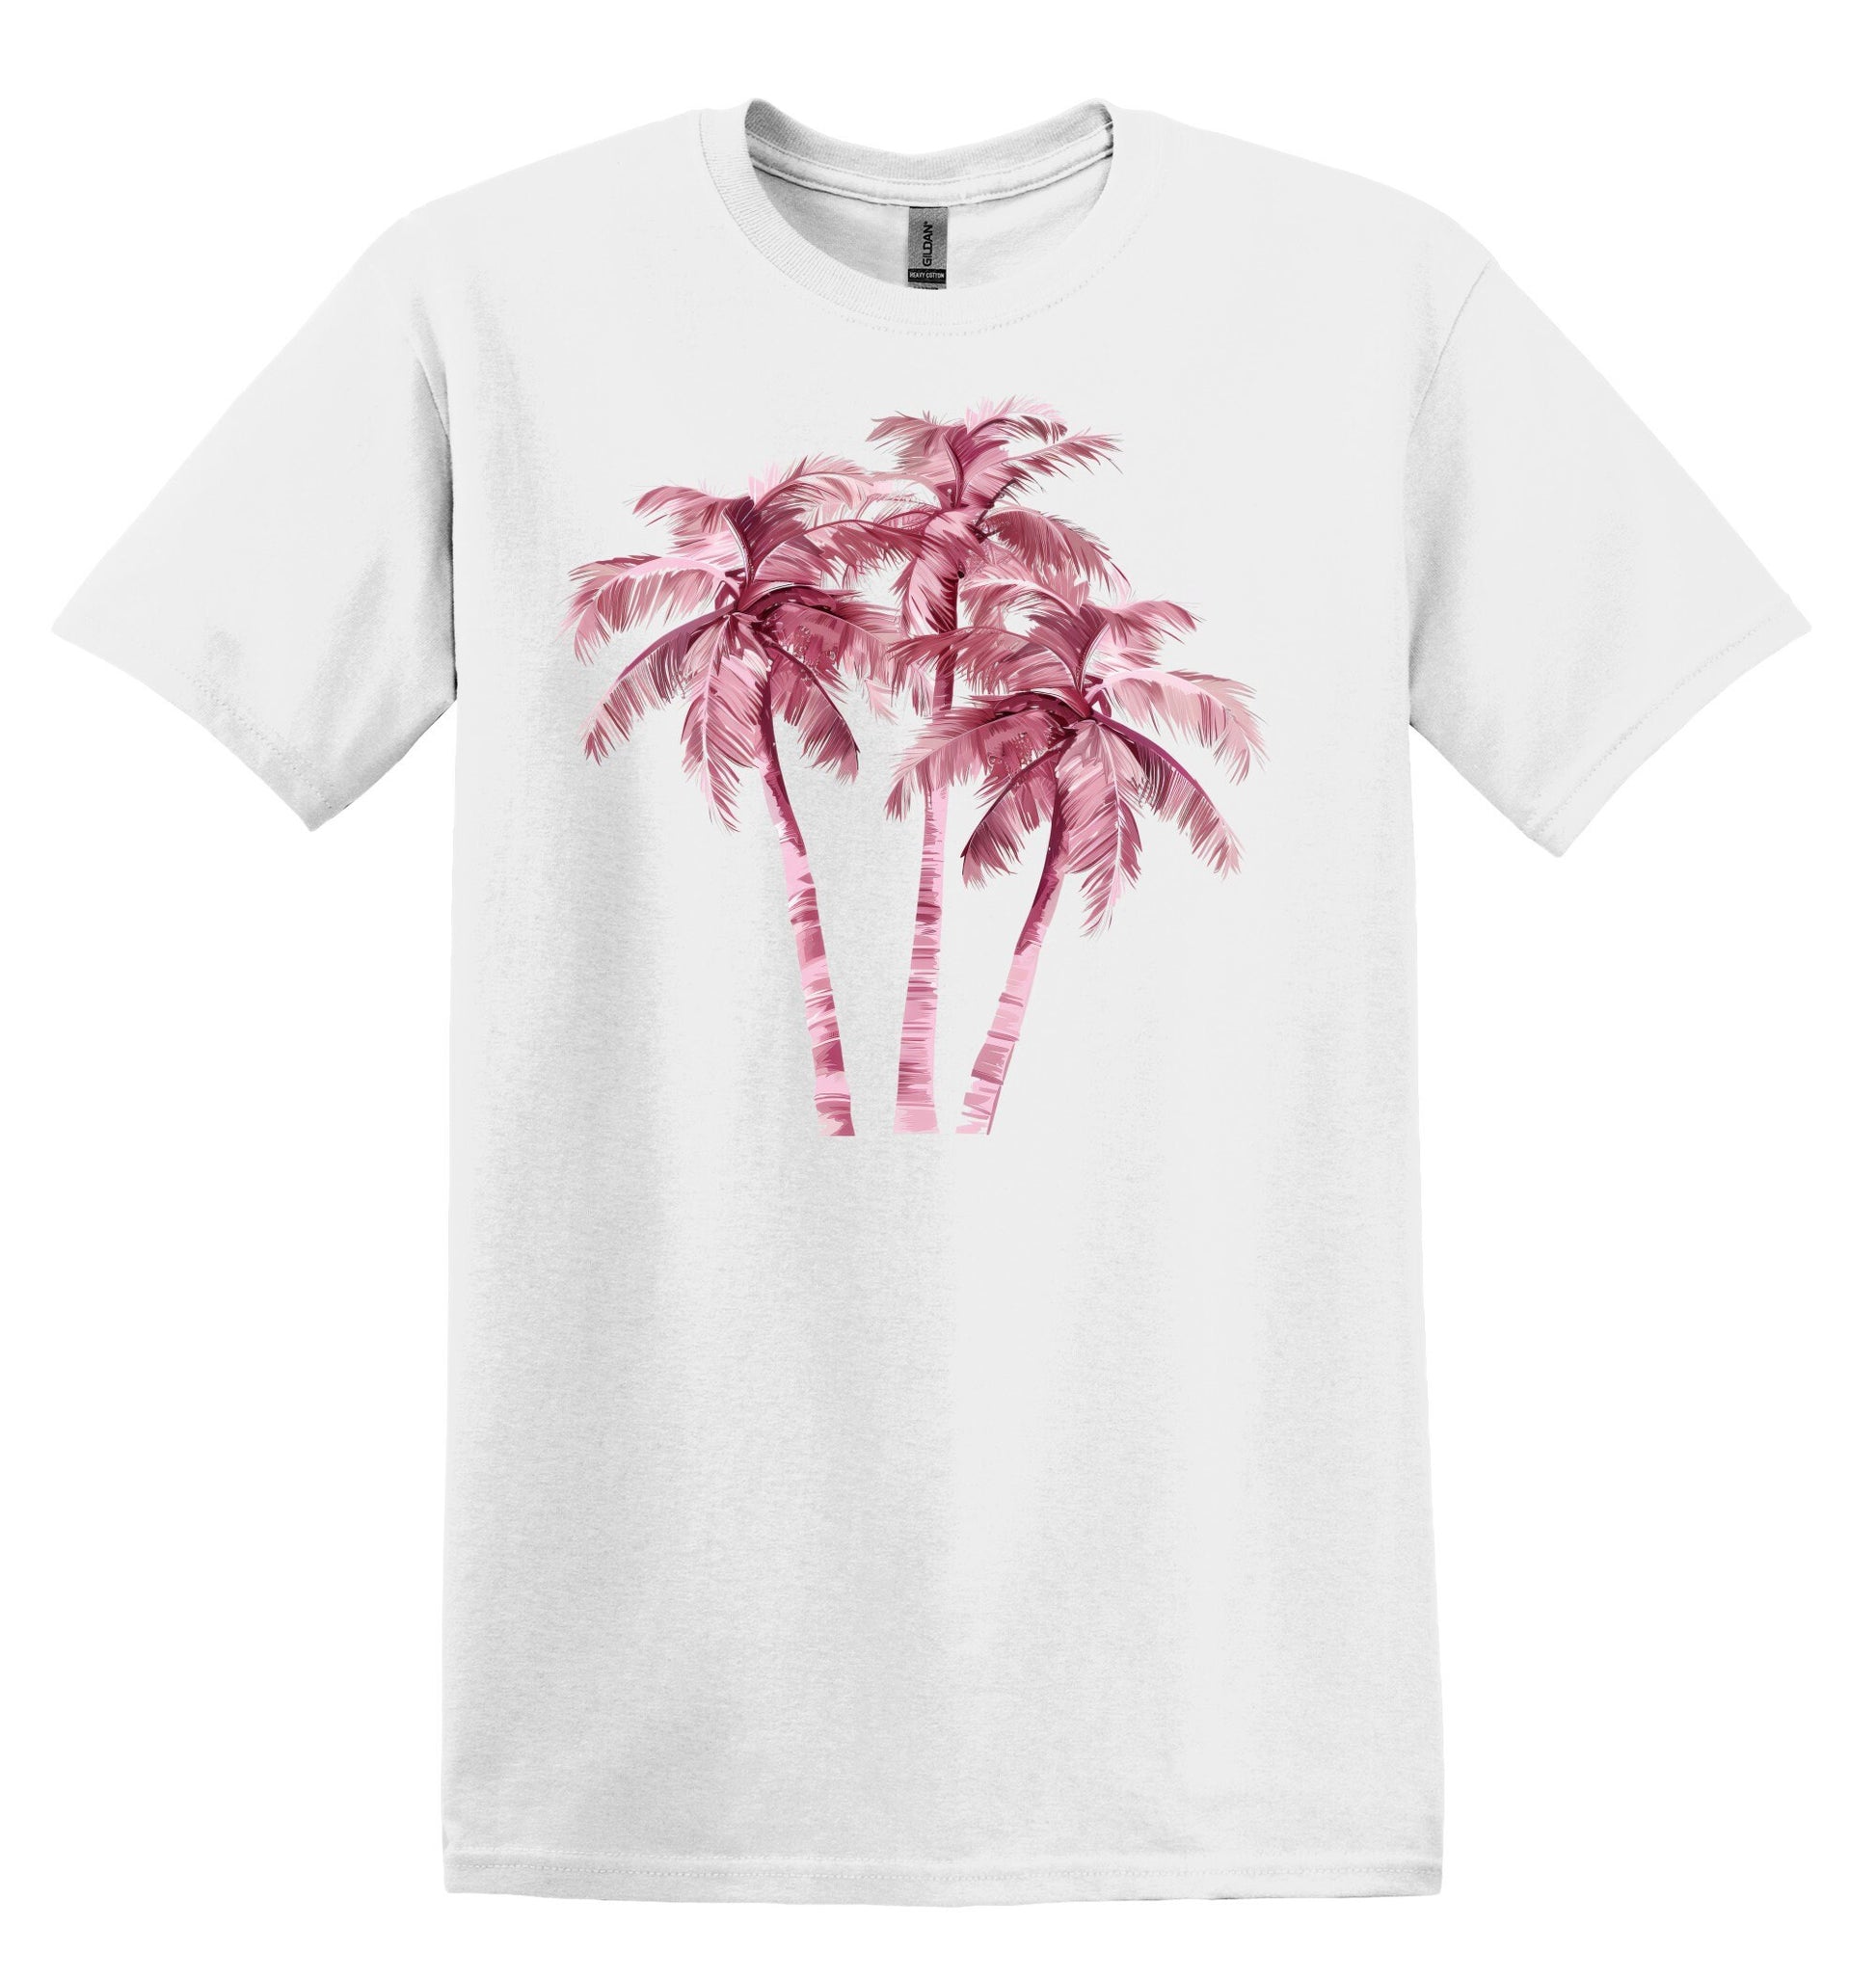 Pink Palm Trees Tshirt Flower Shirt Garden Lover Shirt Flower Lover Shirt Wild Flowers Shirt Floral Tshirt Boho Floral Shirt